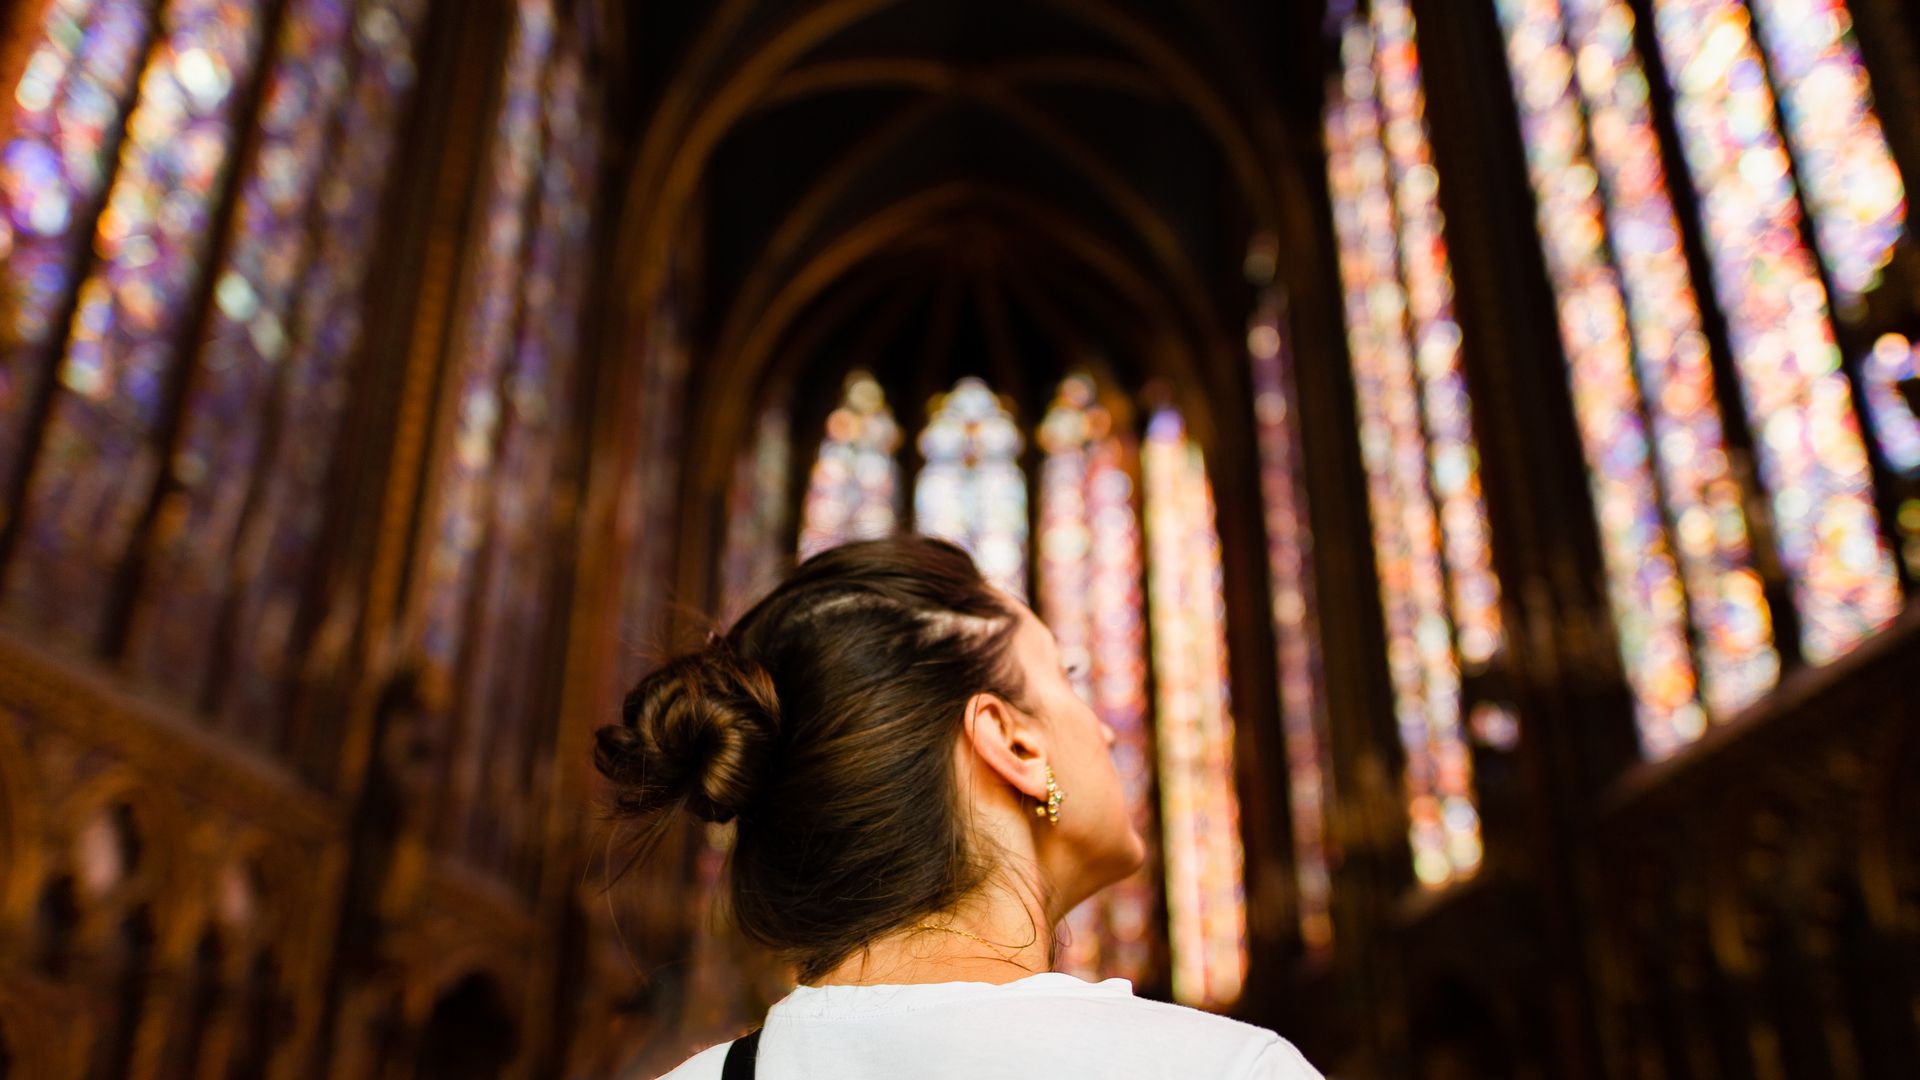 La Sainte-Chapelle: Admission Ticket & Audio Tour